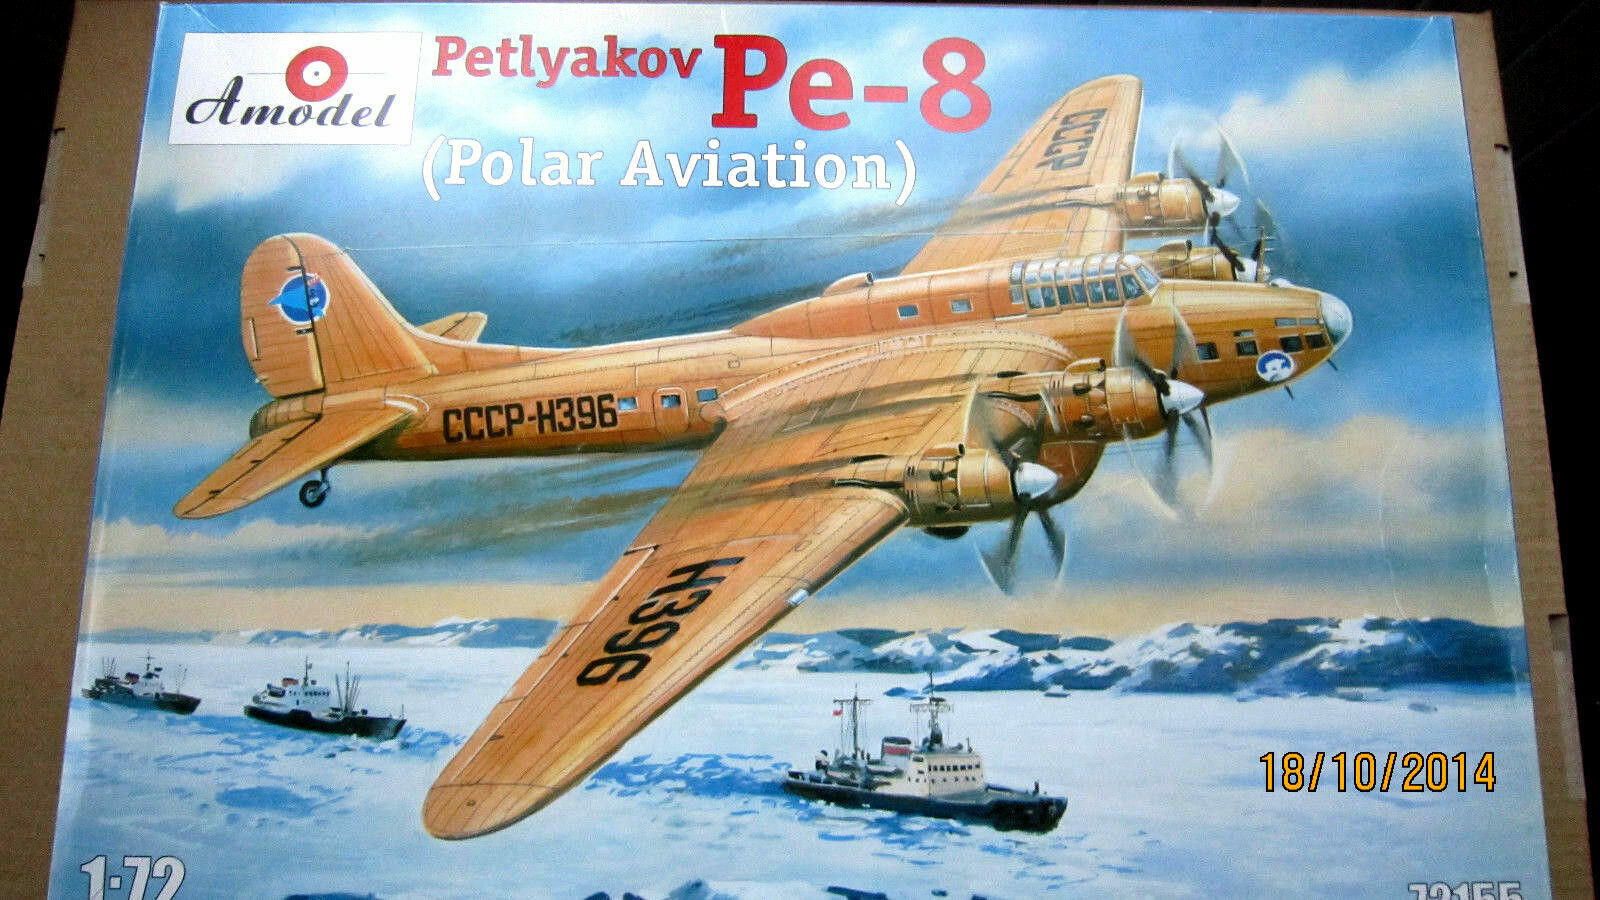 Petlyakov Pe-8 Polar Wallpapers